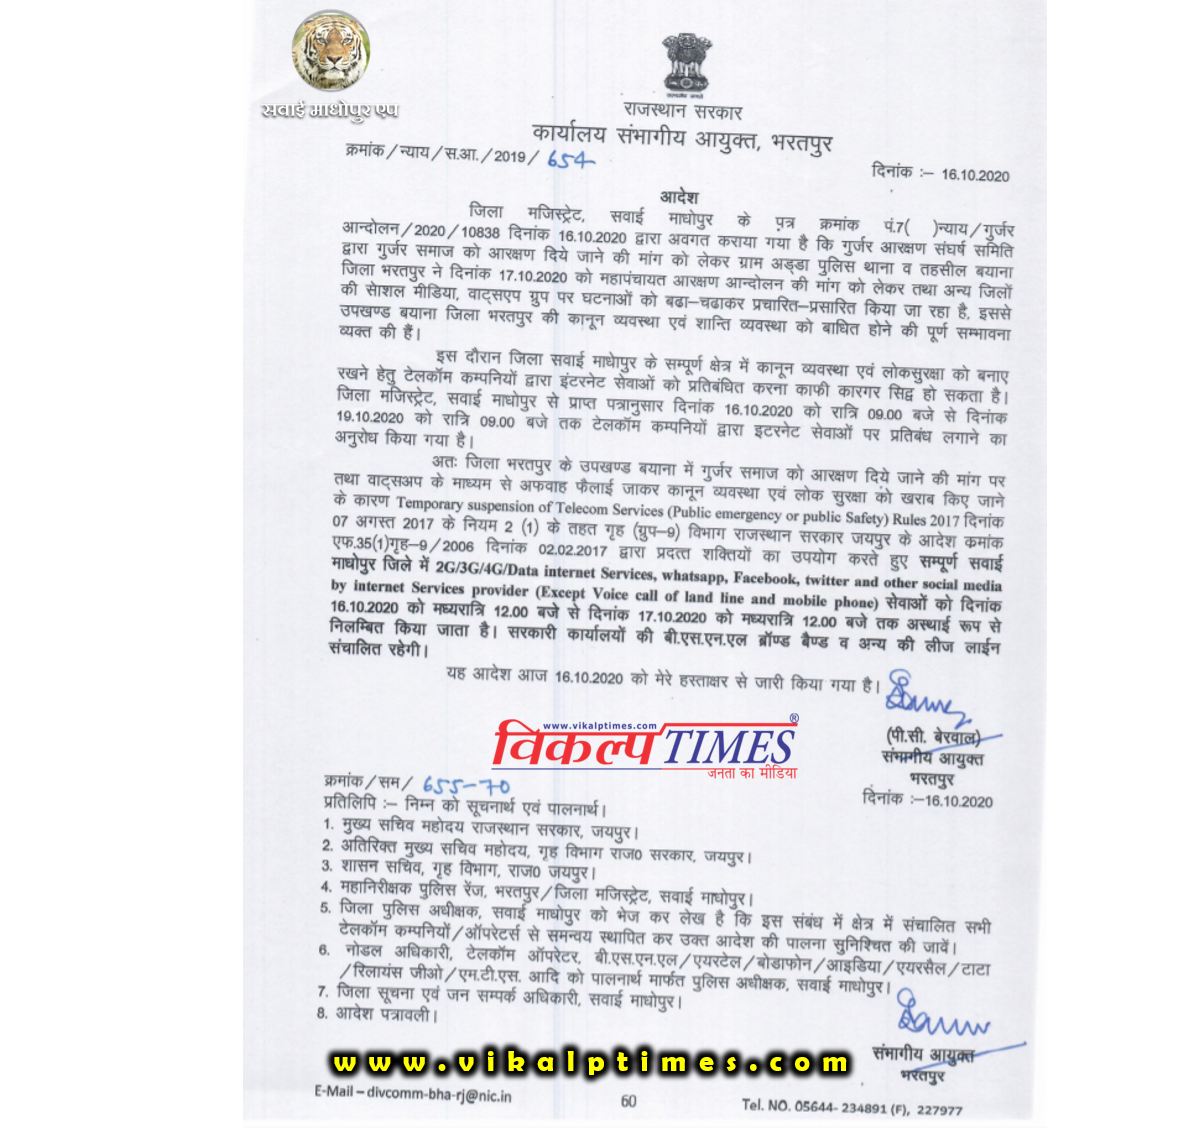 Gurjar Reservation Movement. Internet services suspend in Sawai Madhopur